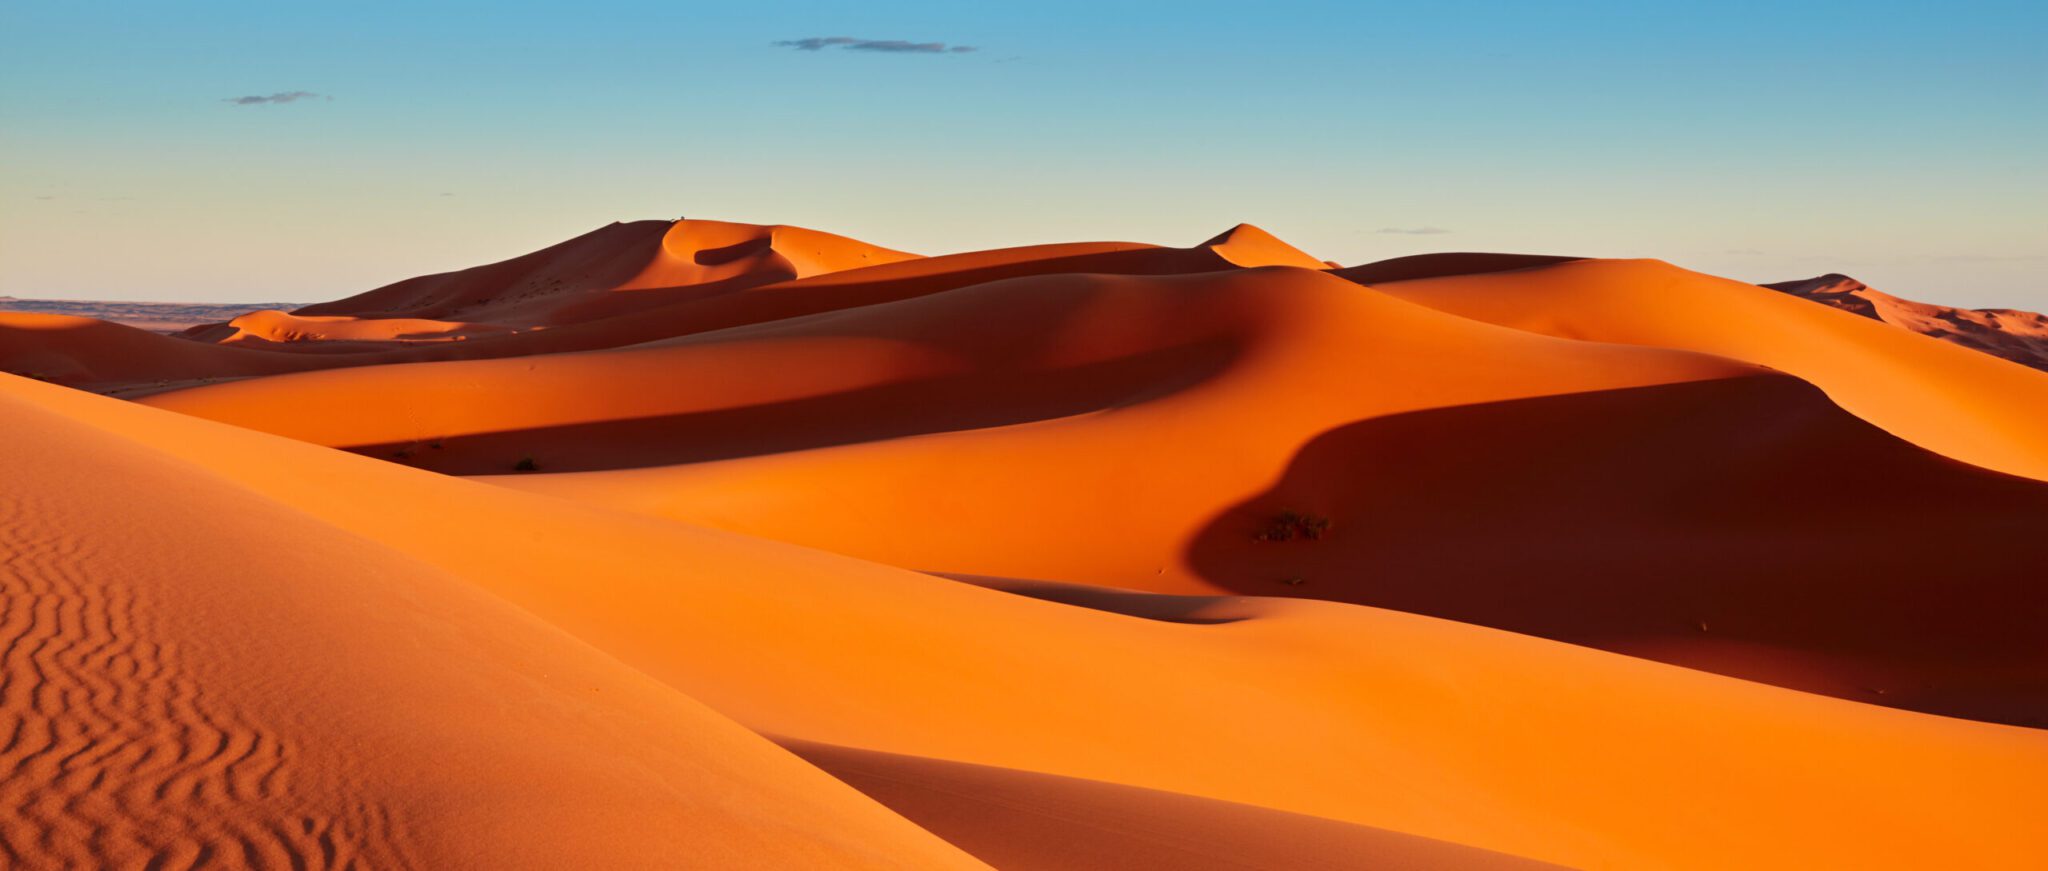 Qu'y a-t-il sous le sable du désert ?